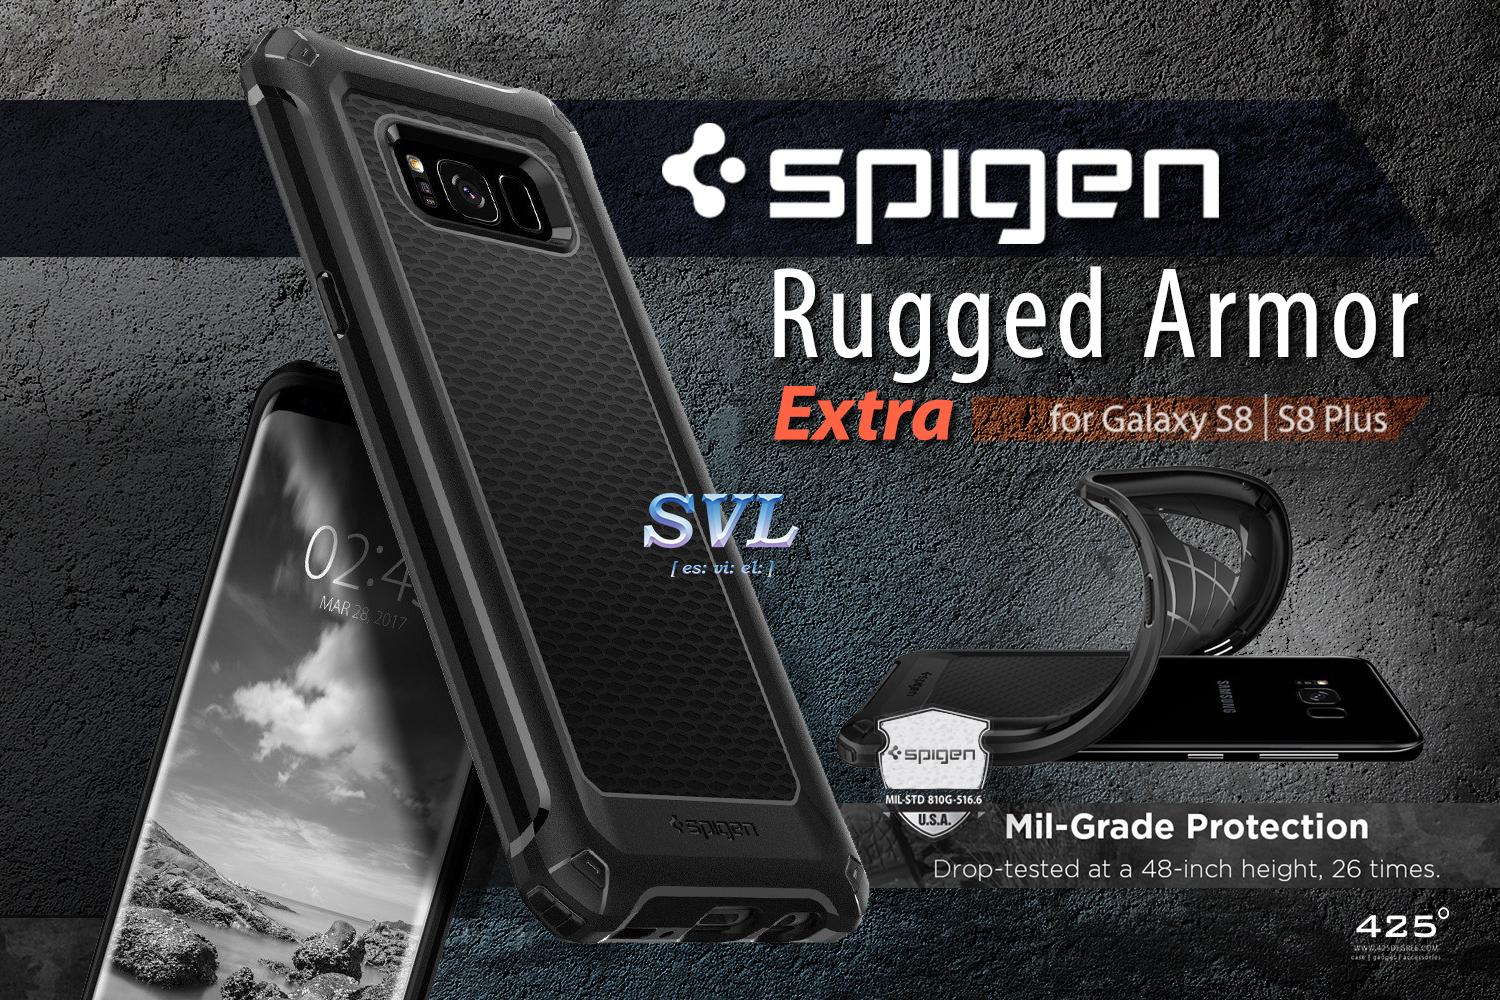 Spigen-Rugged-Armor-Extra-S8-FB-Post.jpg